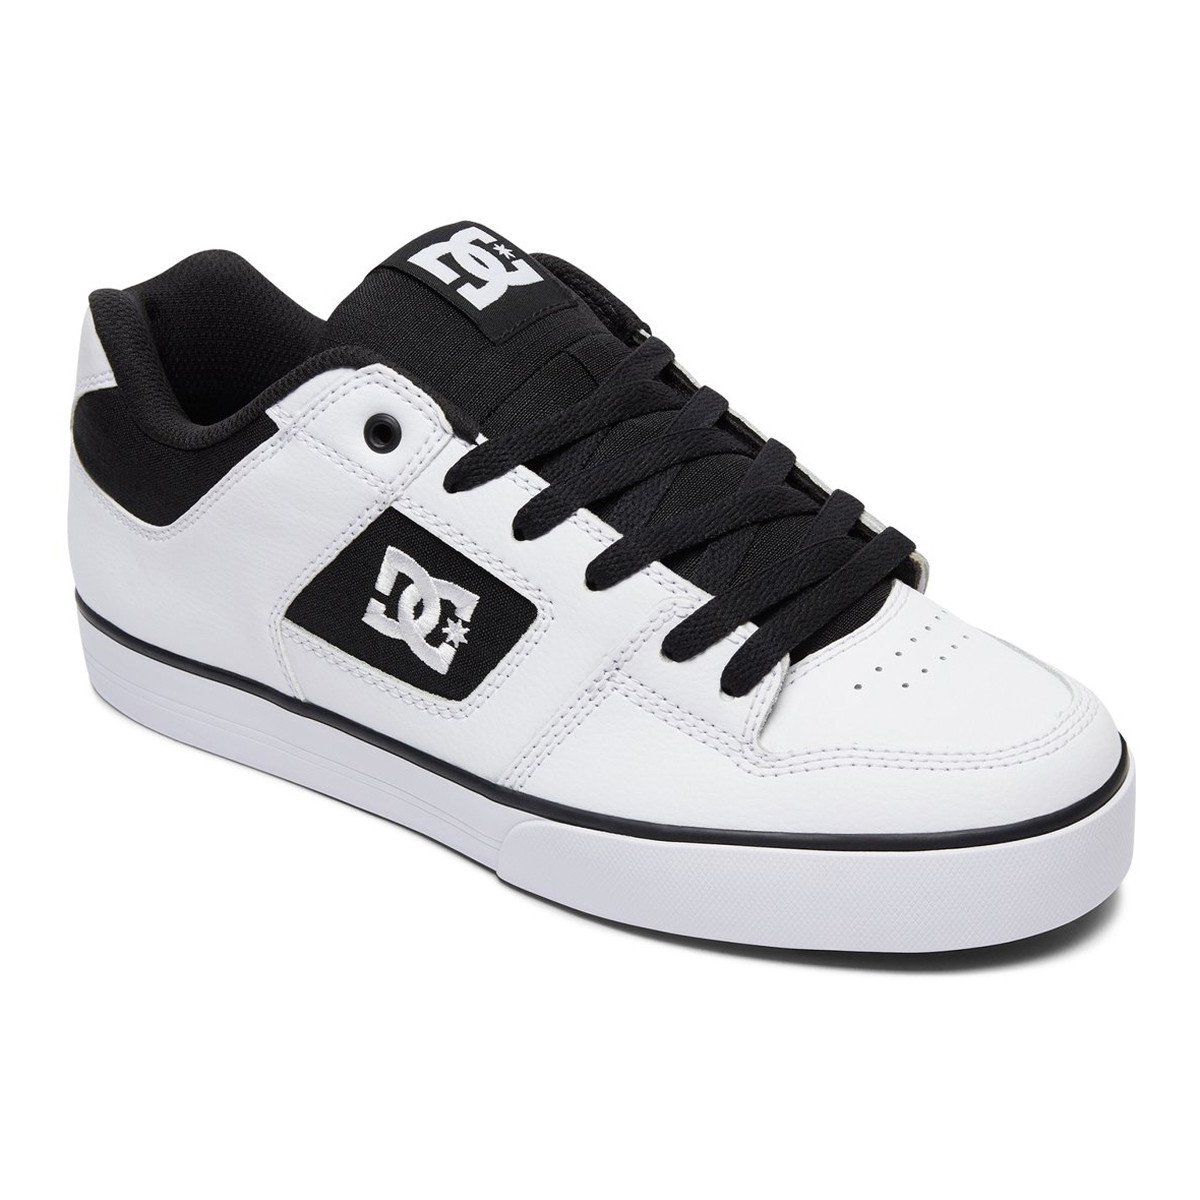 DC Schuhe Pure Weiß/Schwarz/Weiß